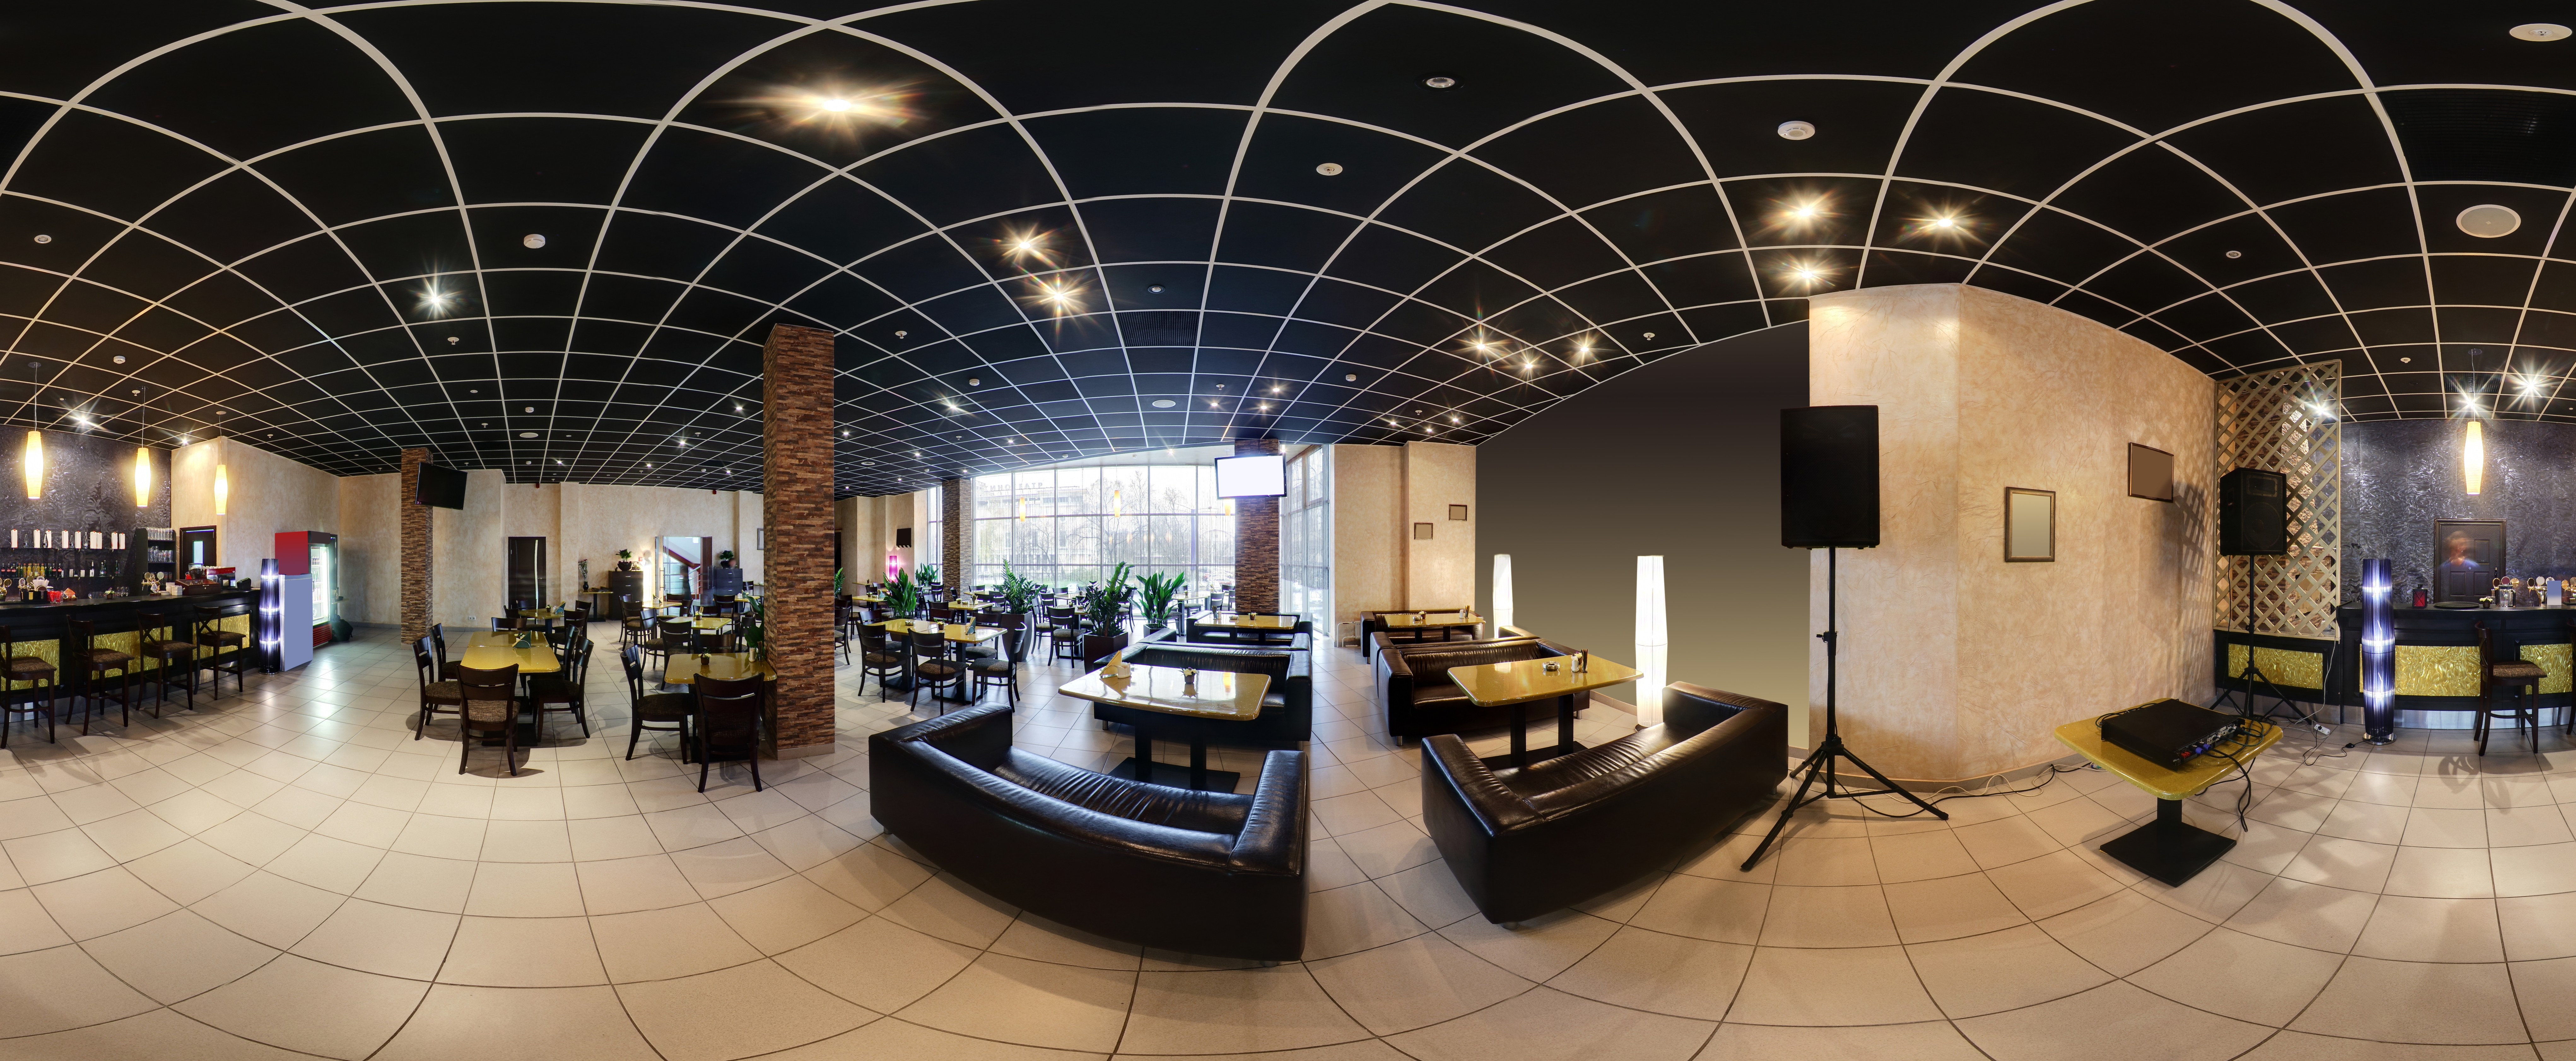 Modern False Ceiling of Restaurant